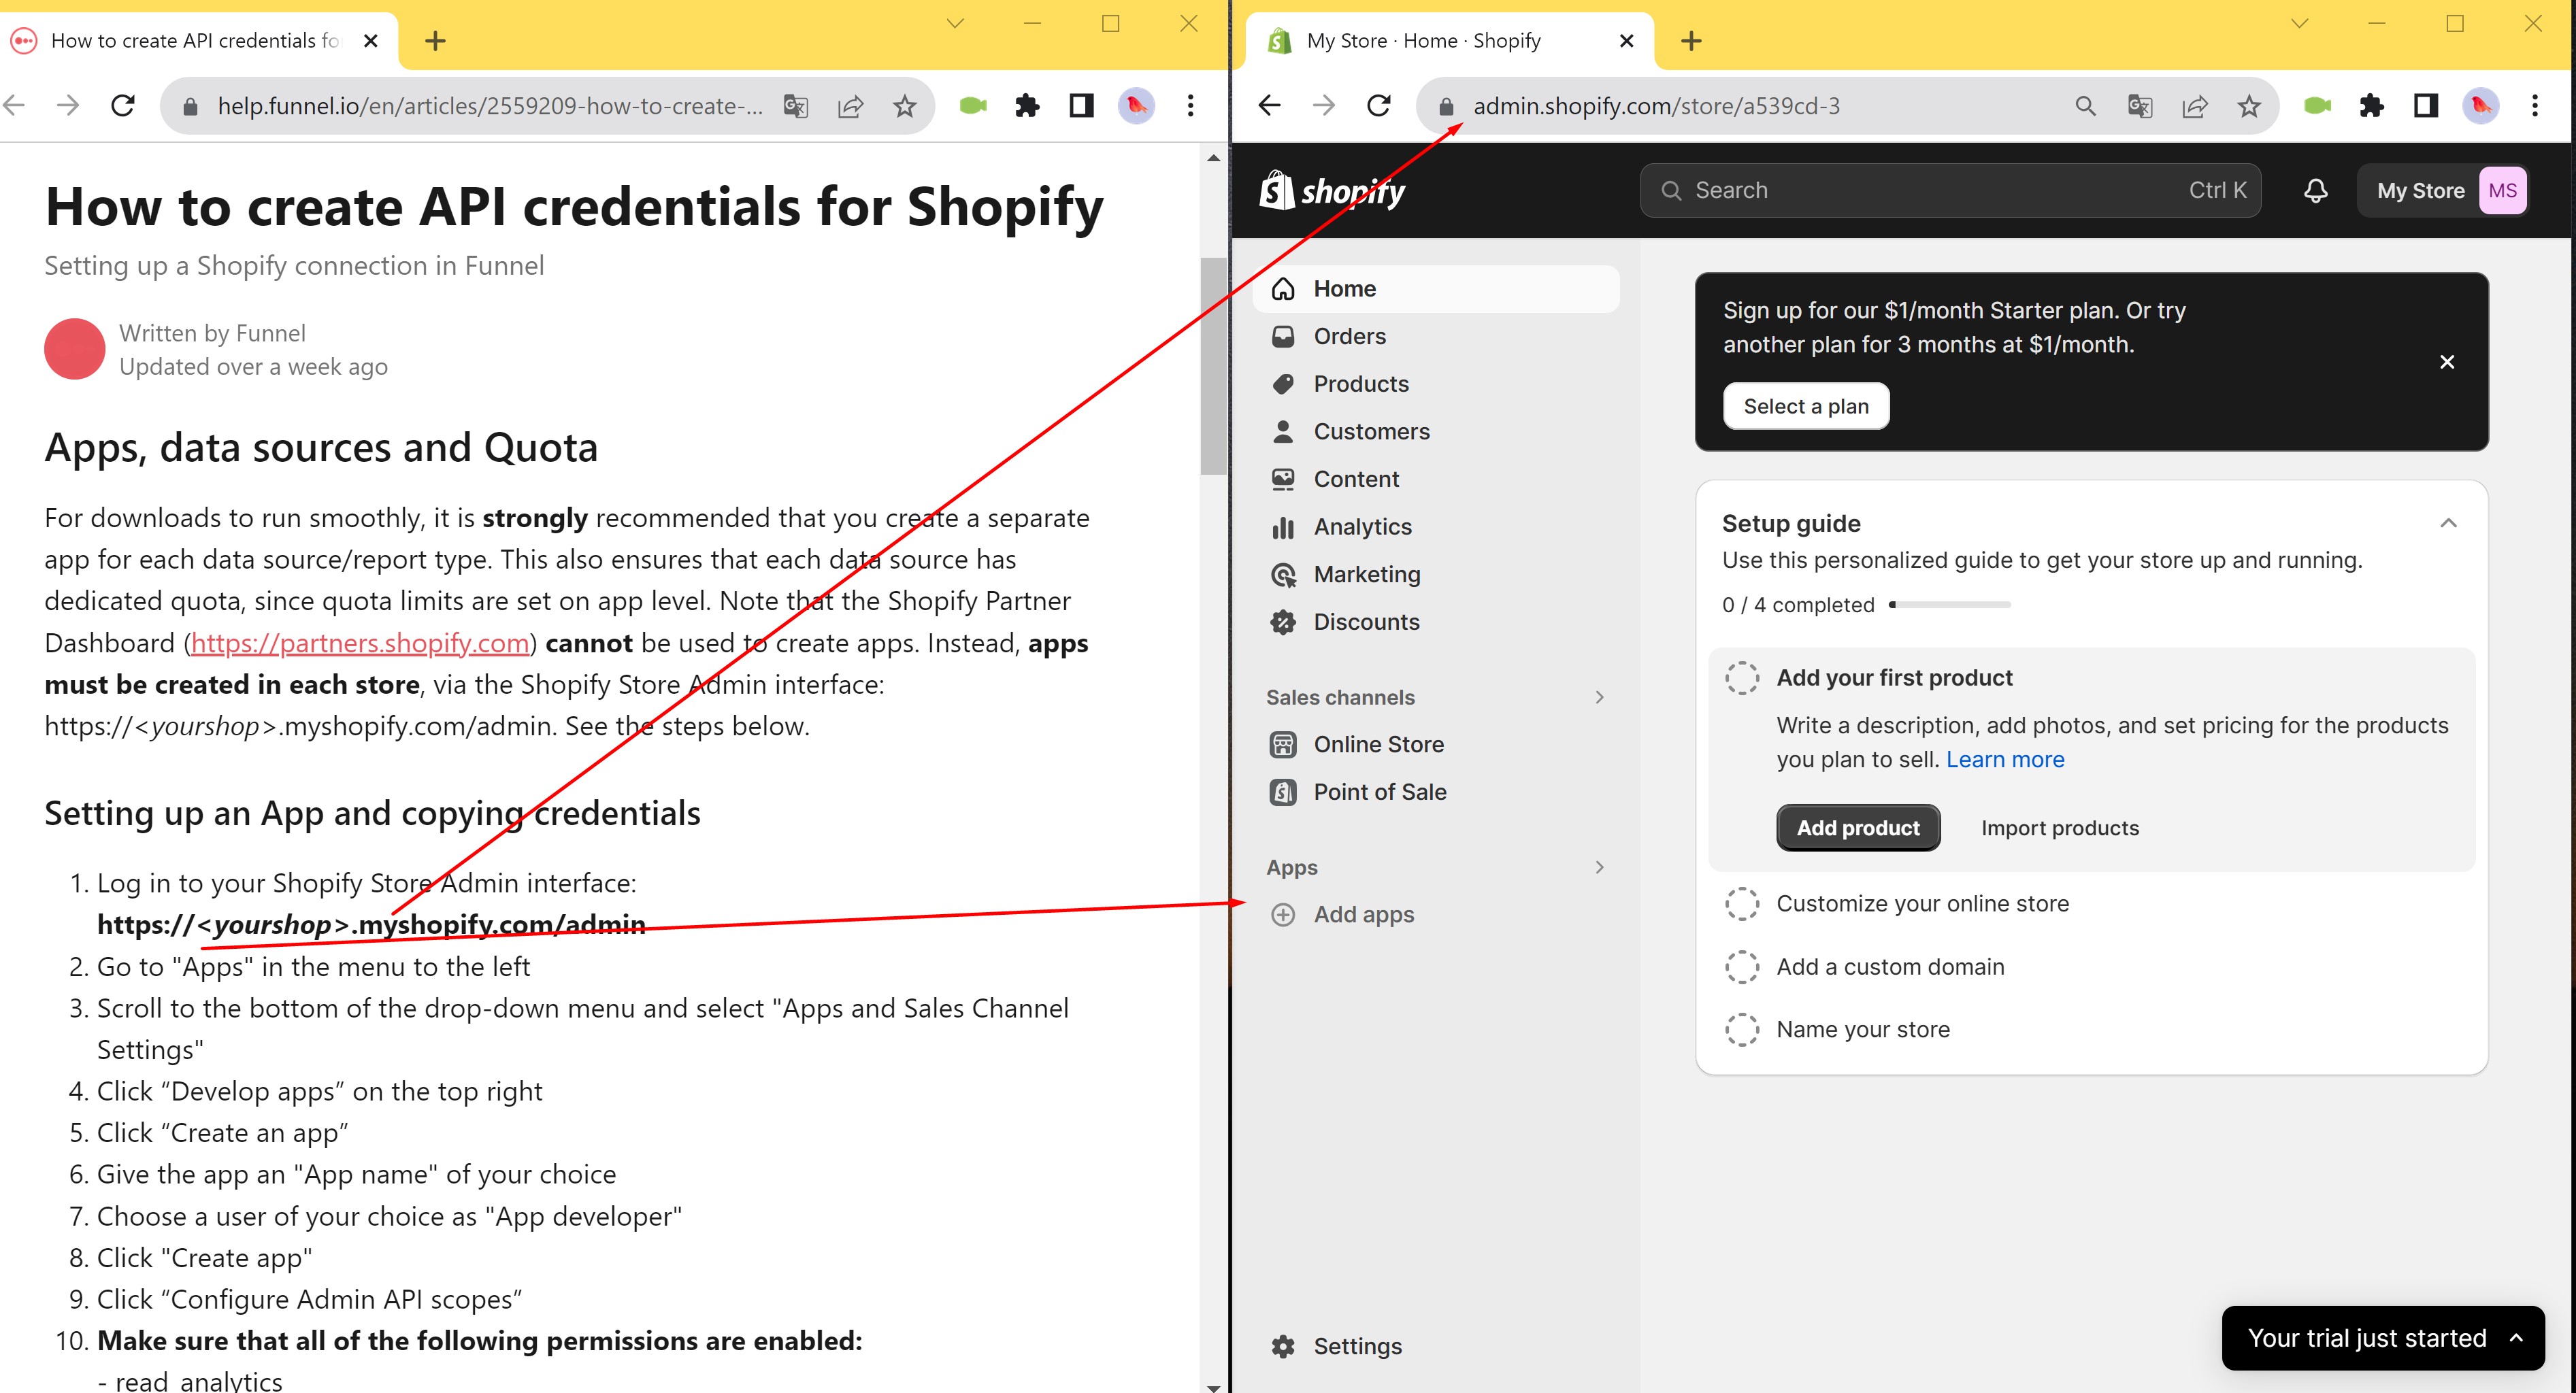 Las instrucciones proporcionadas en la página de información no coinciden con la interfaz real de Shopify